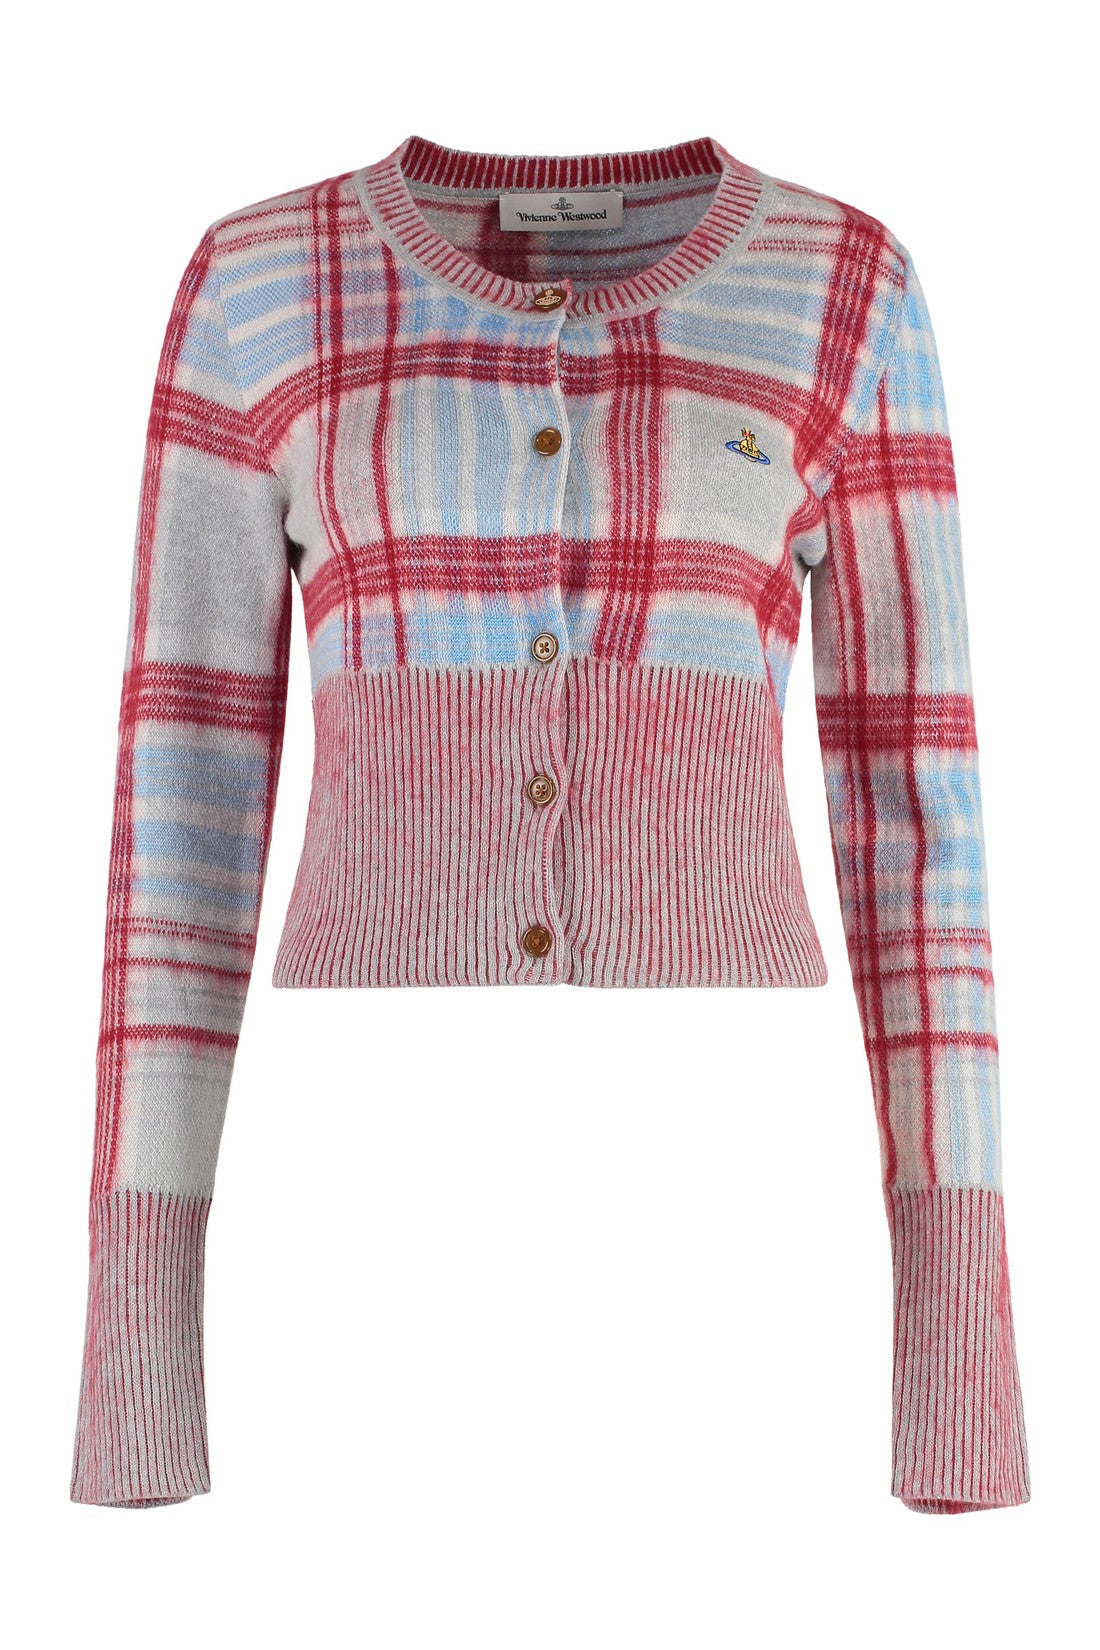 Vivienne Westwood-OUTLET-SALE-Cotton blend cardigan-ARCHIVIST